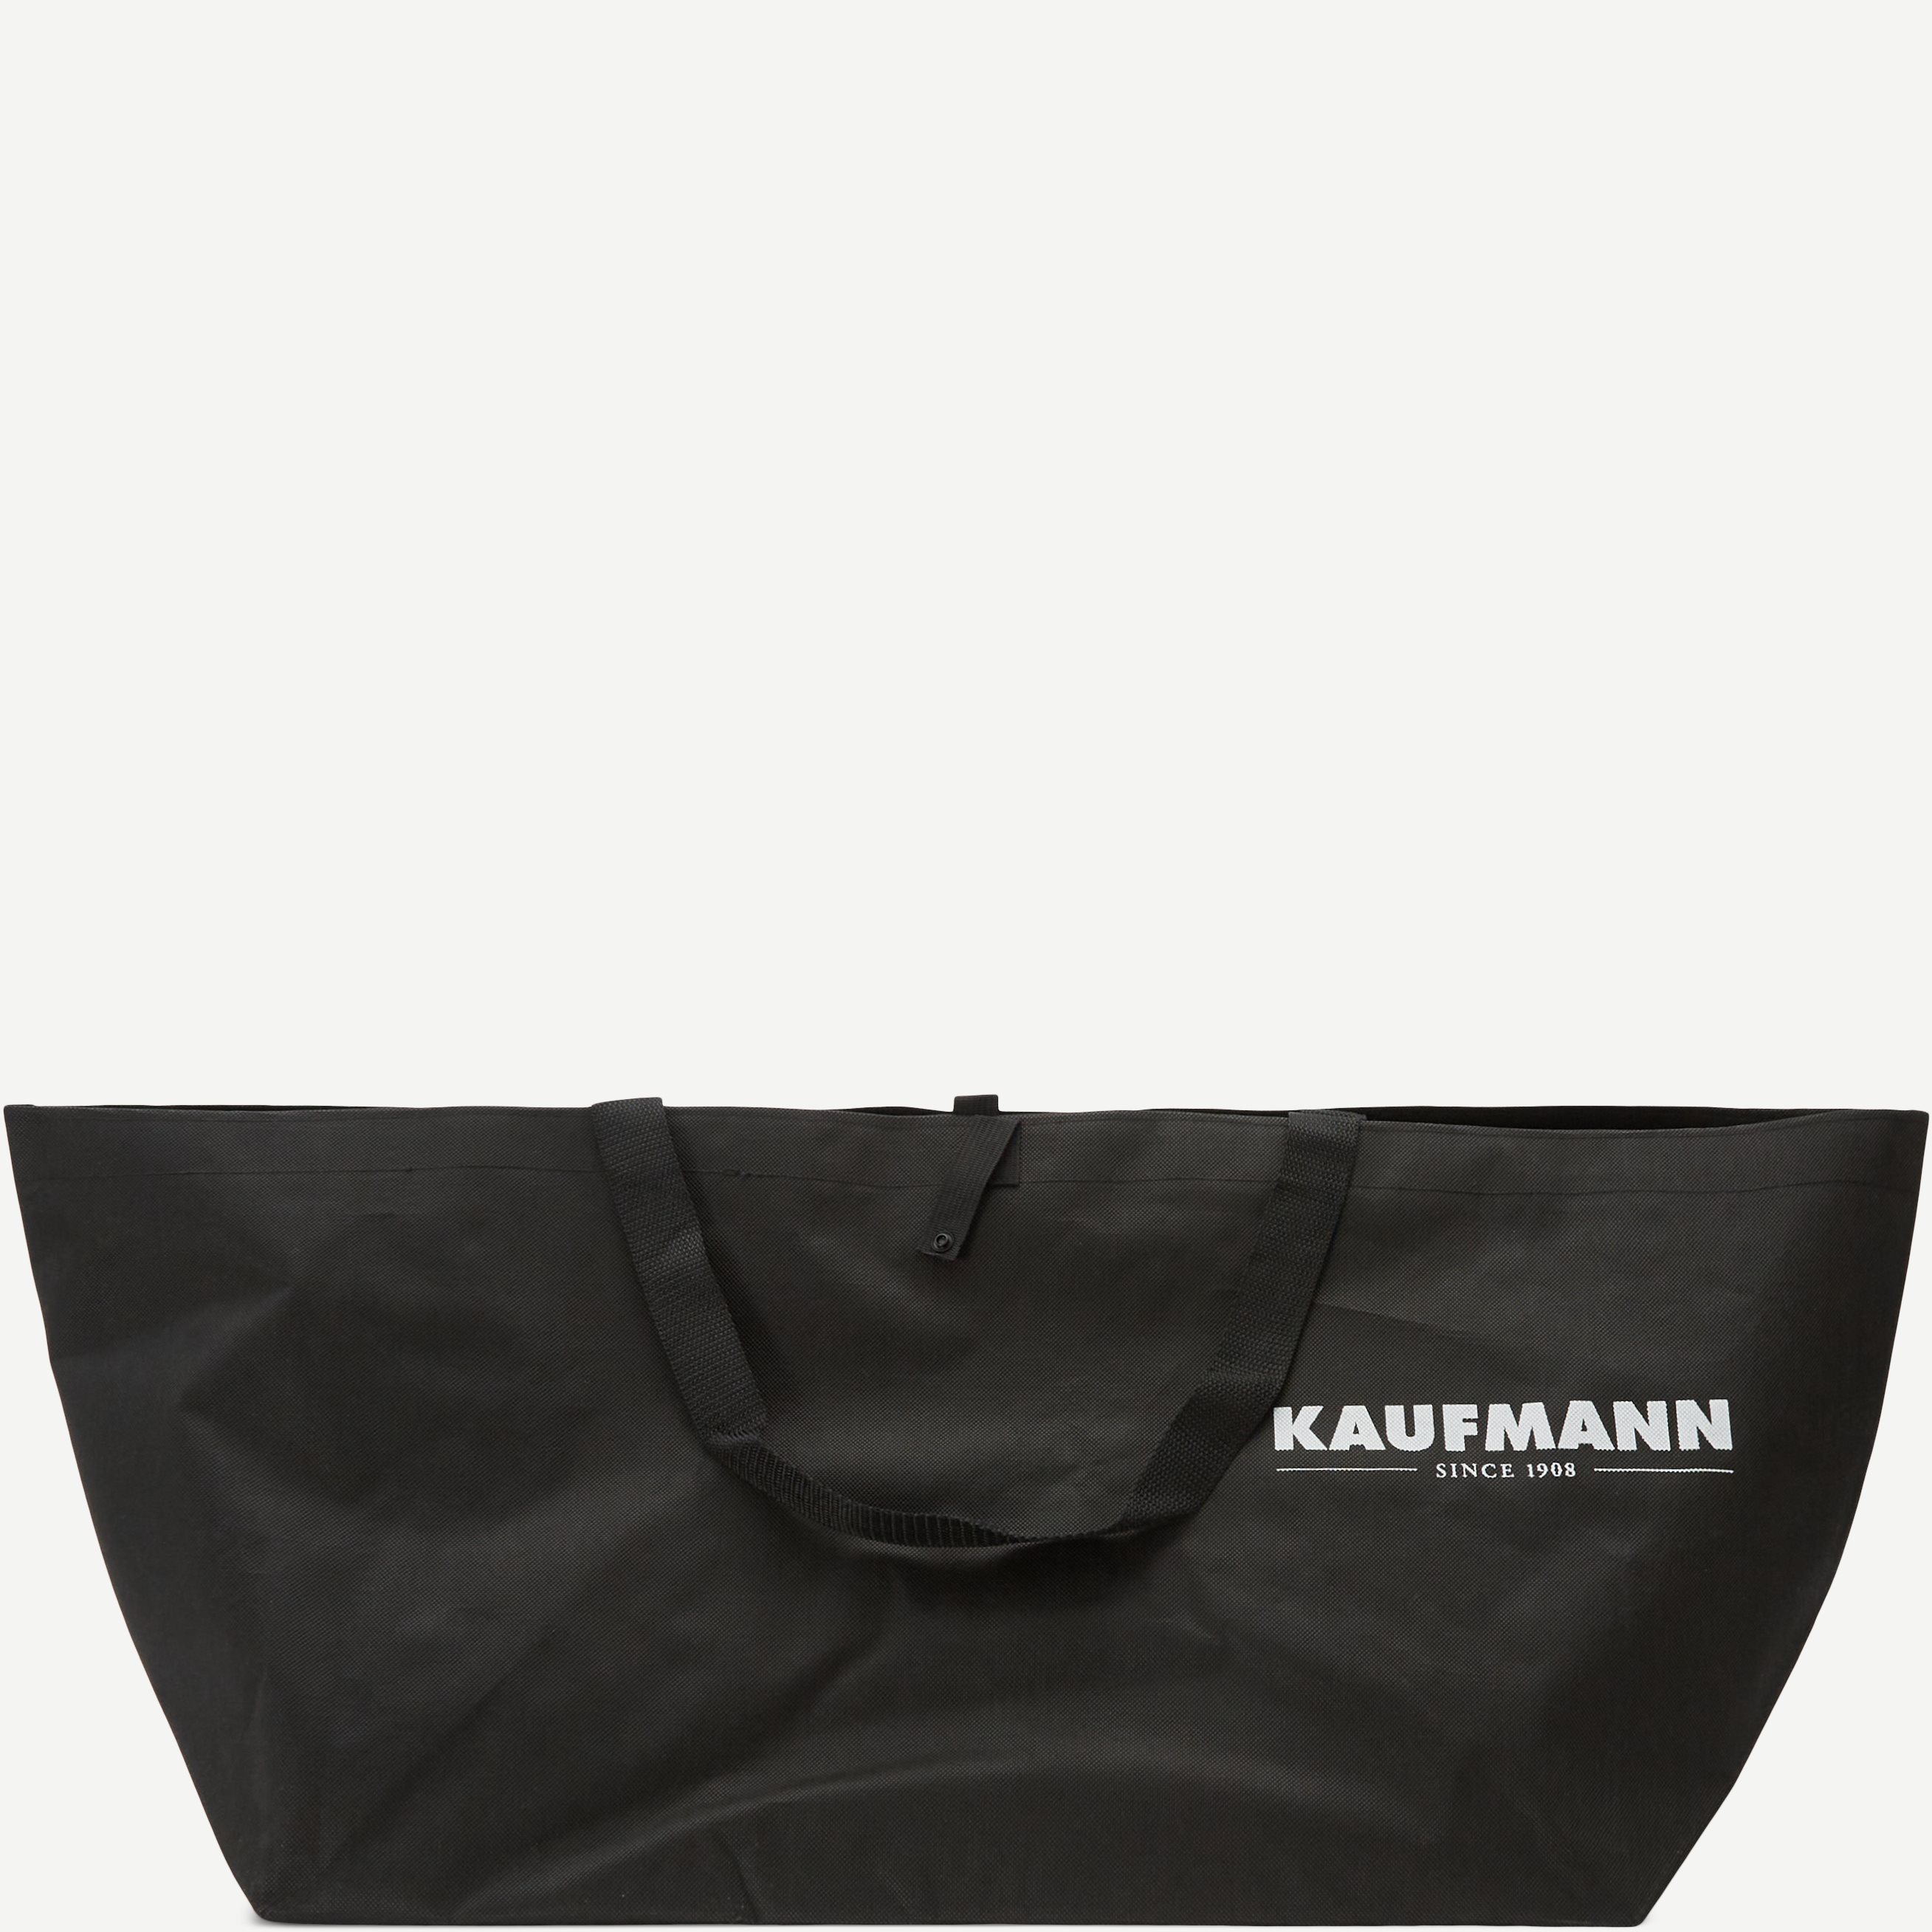 Kaufmann Bags KAUFMANN BIG BAG Black